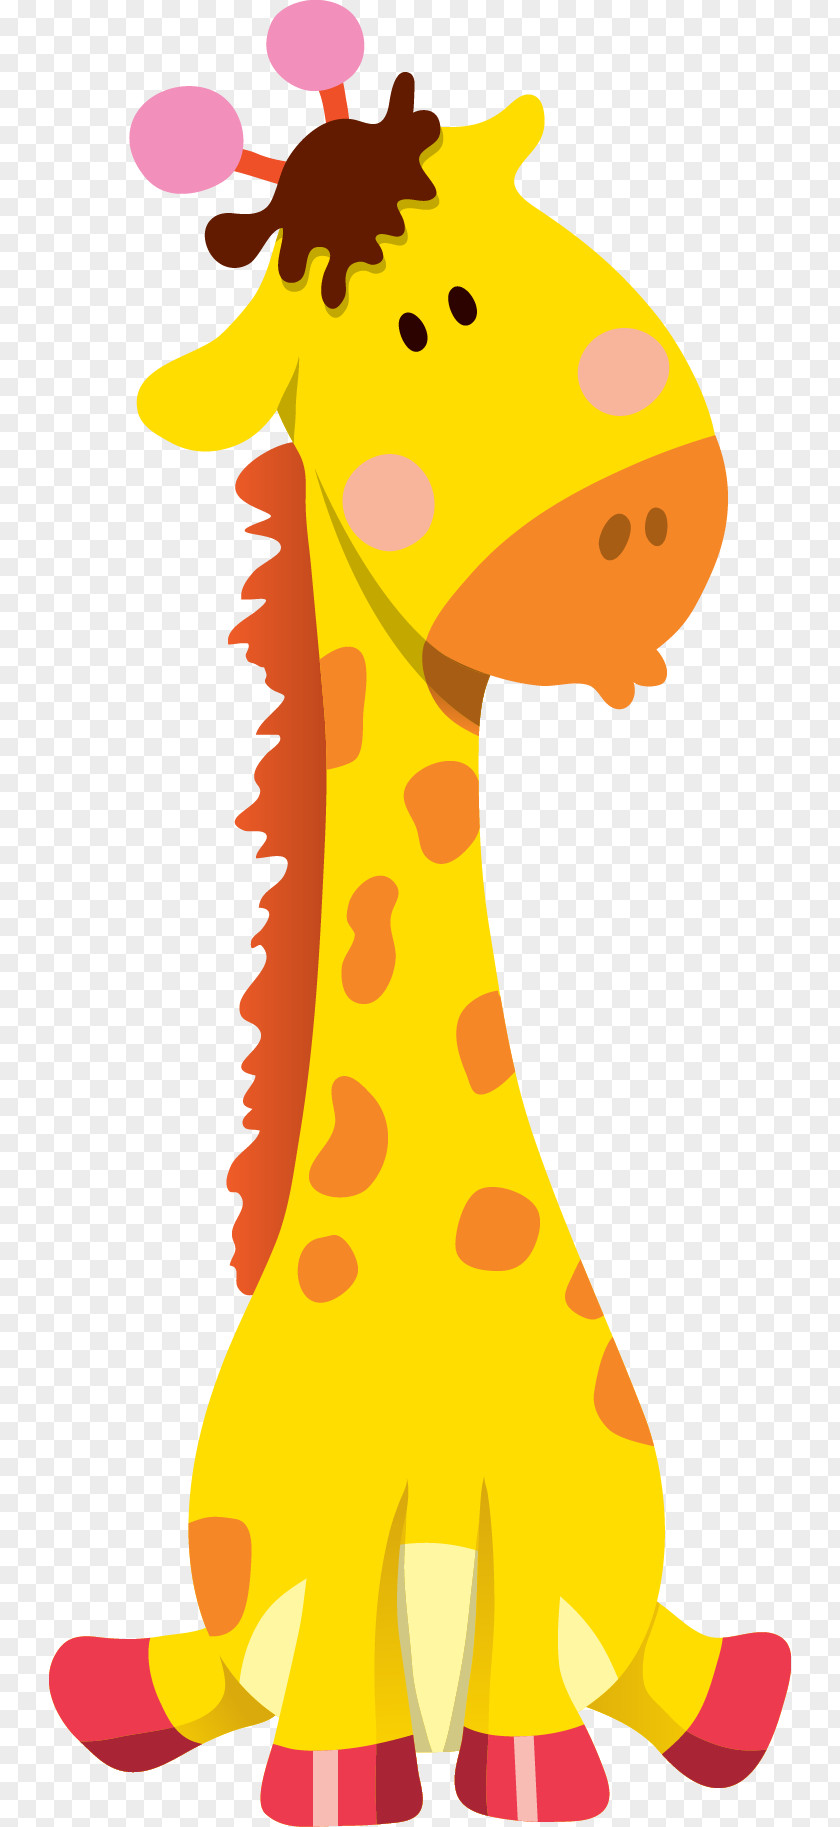 Giraffe Cartoon Animal Illustration PNG